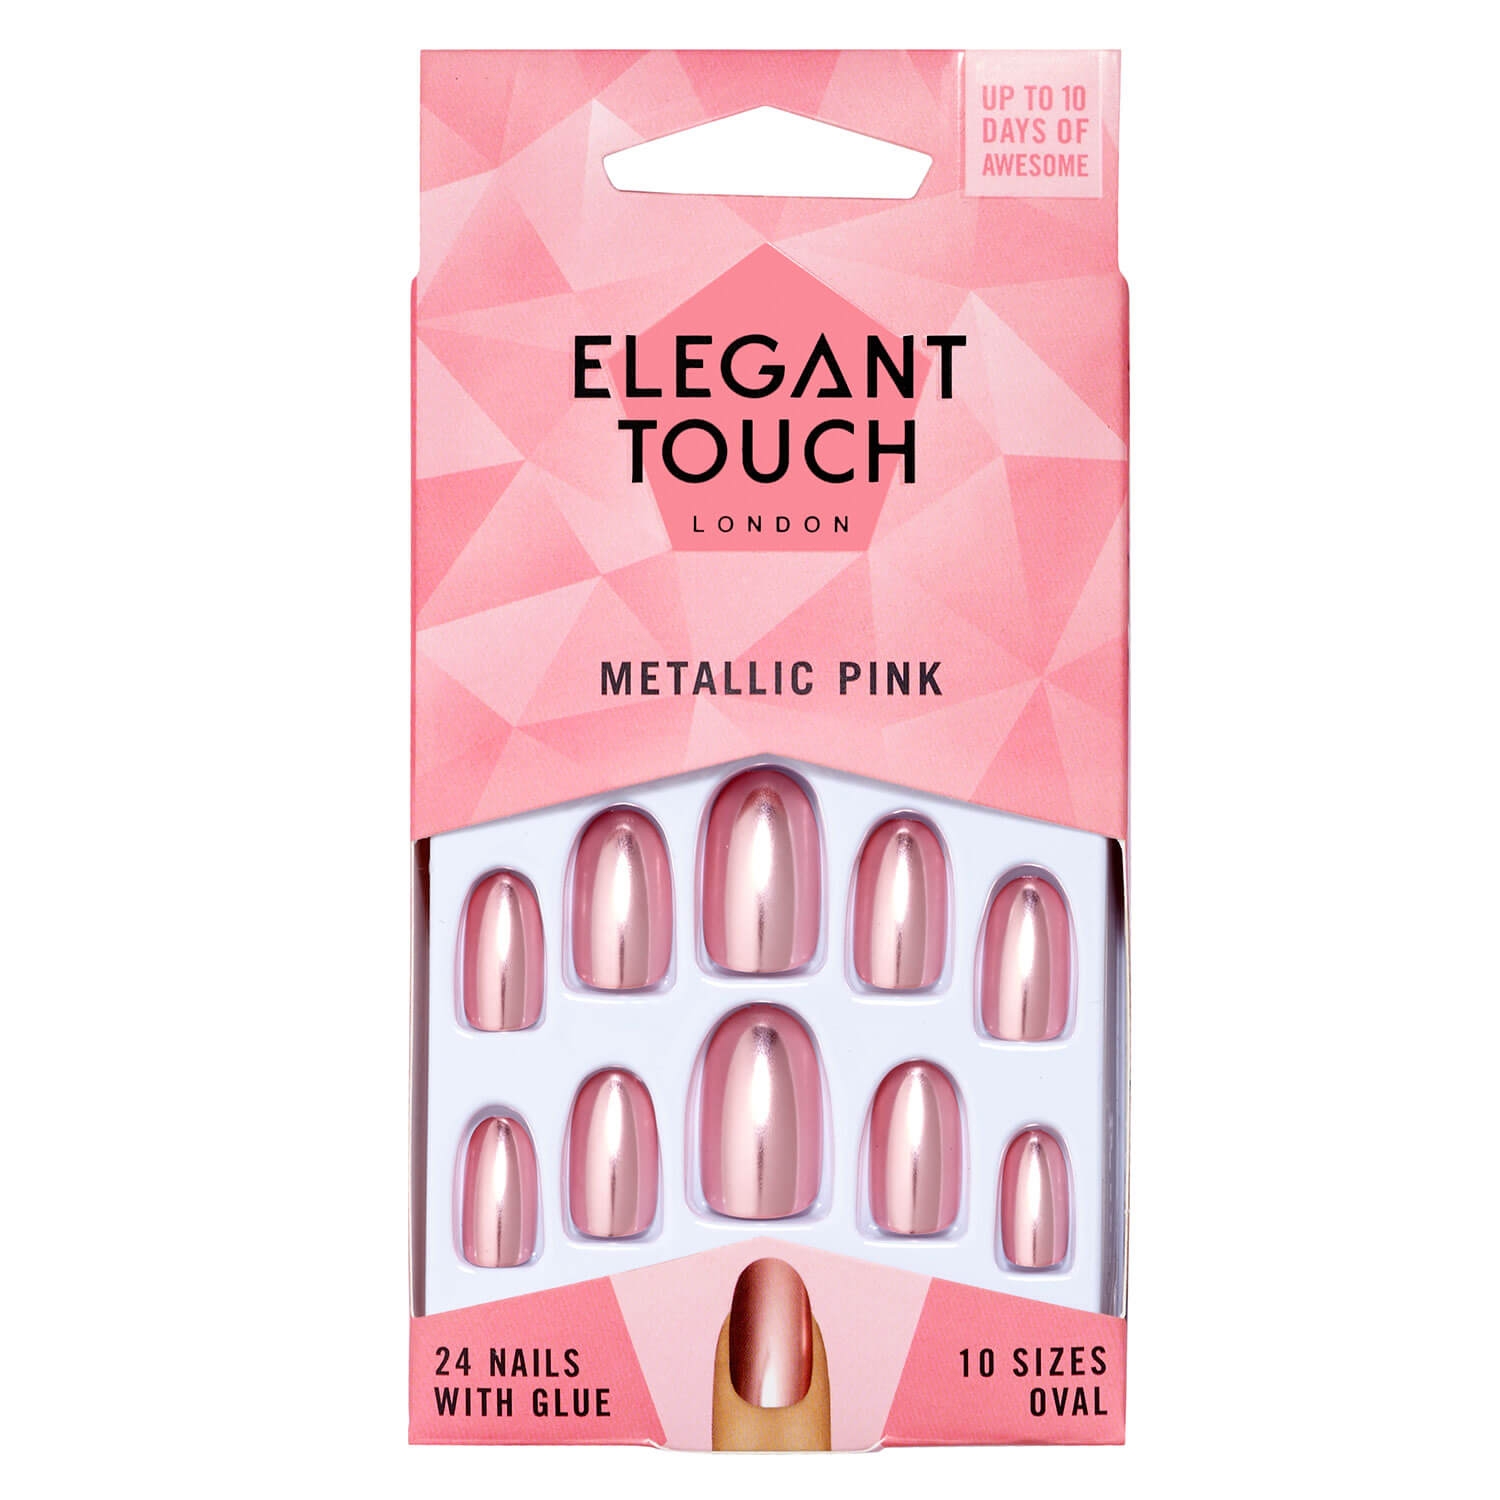 Produktbild von Elegant Touch - Metallic Pink